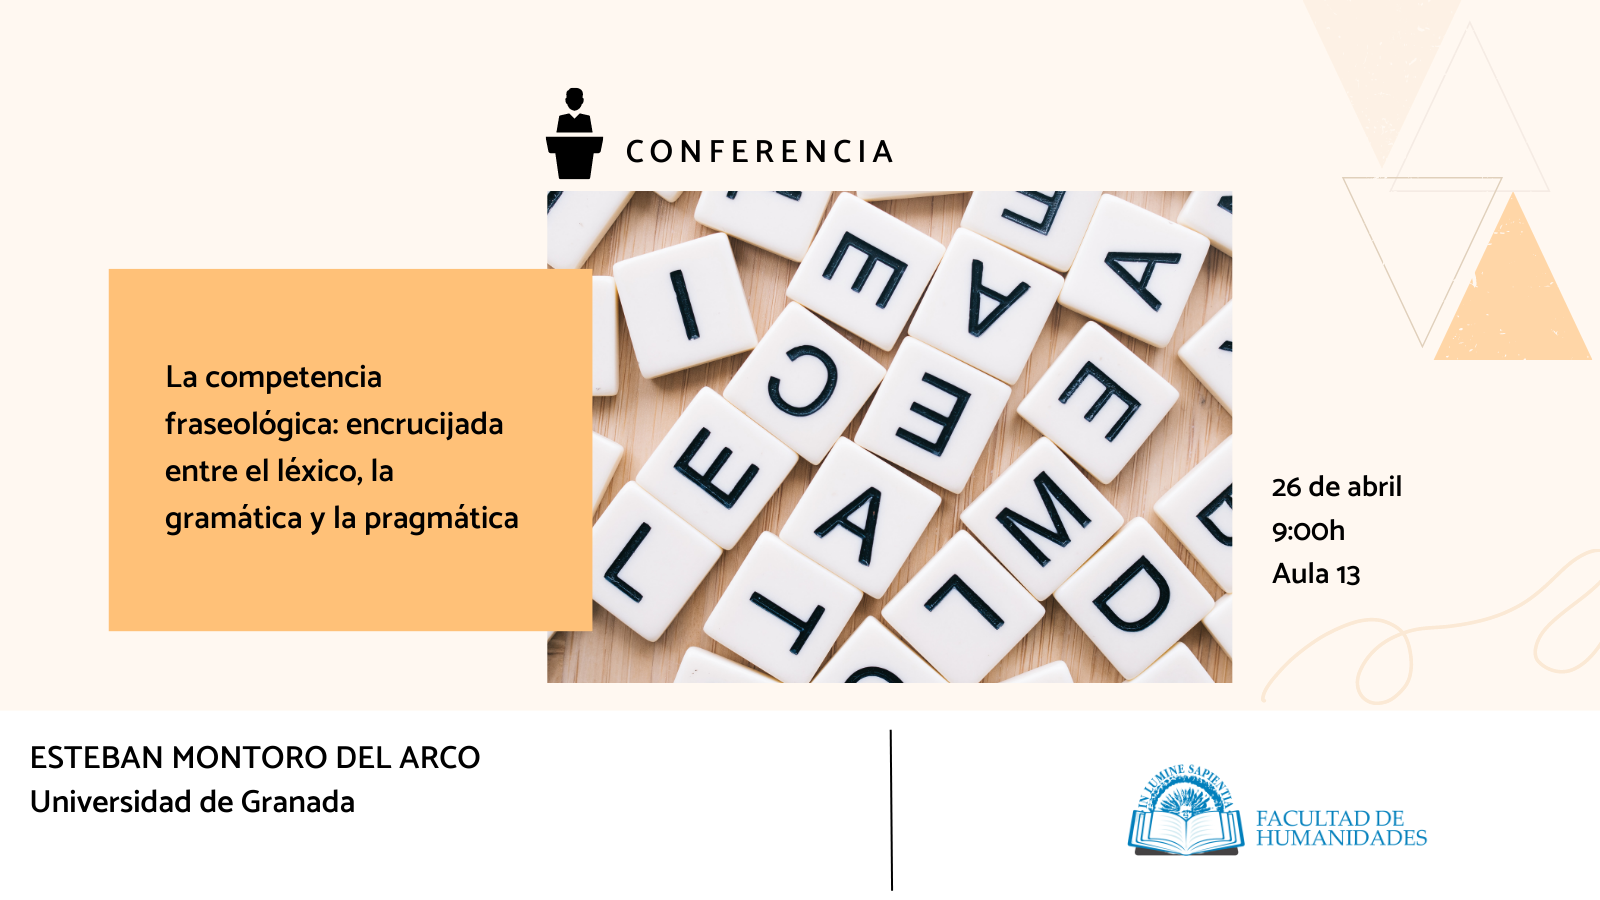 La Facultad de Humanidades y Yolanda González Aranda organizan la conferencia  de apoyo a la docencia «La competencia fraseológica: encrucijada entre el léxico, la gramática y la pragmática».
